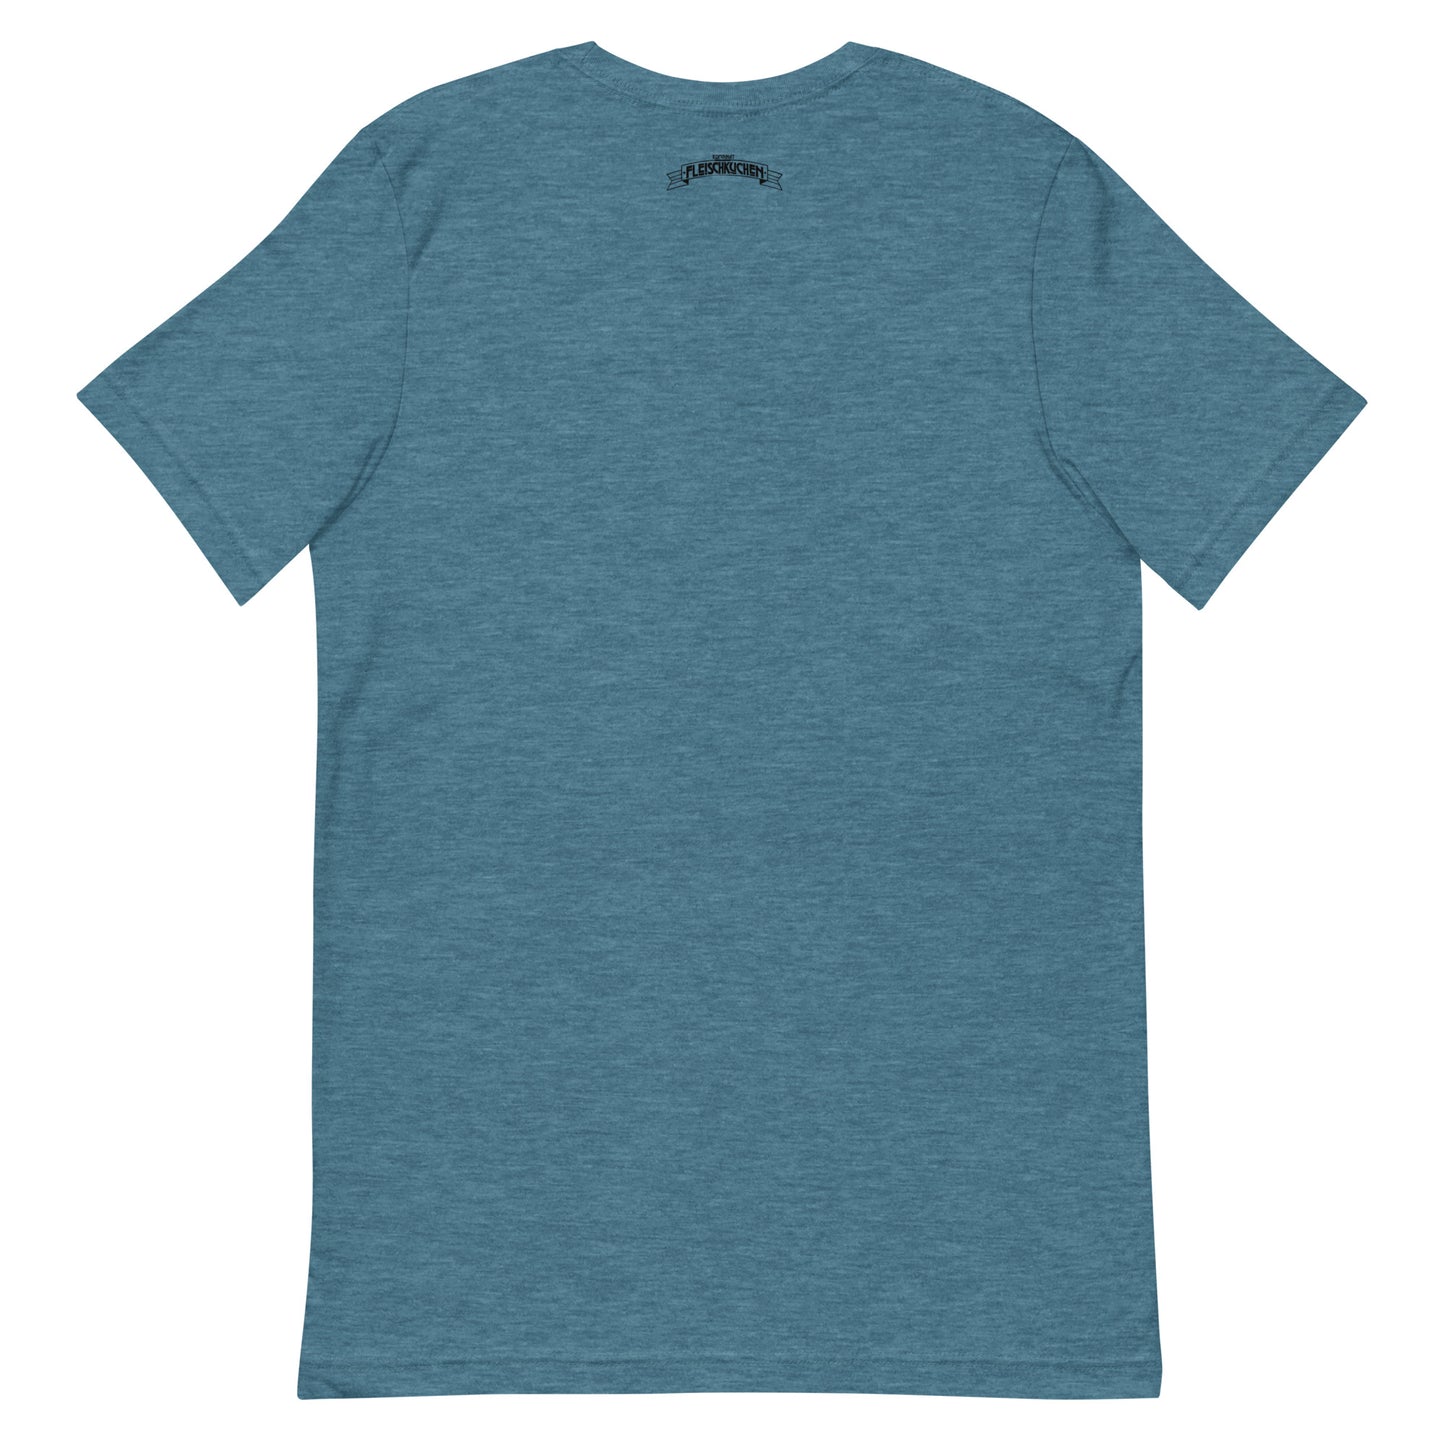 Kurzärmeliges T-Shirt für Herren - Miami Pieschen Retro